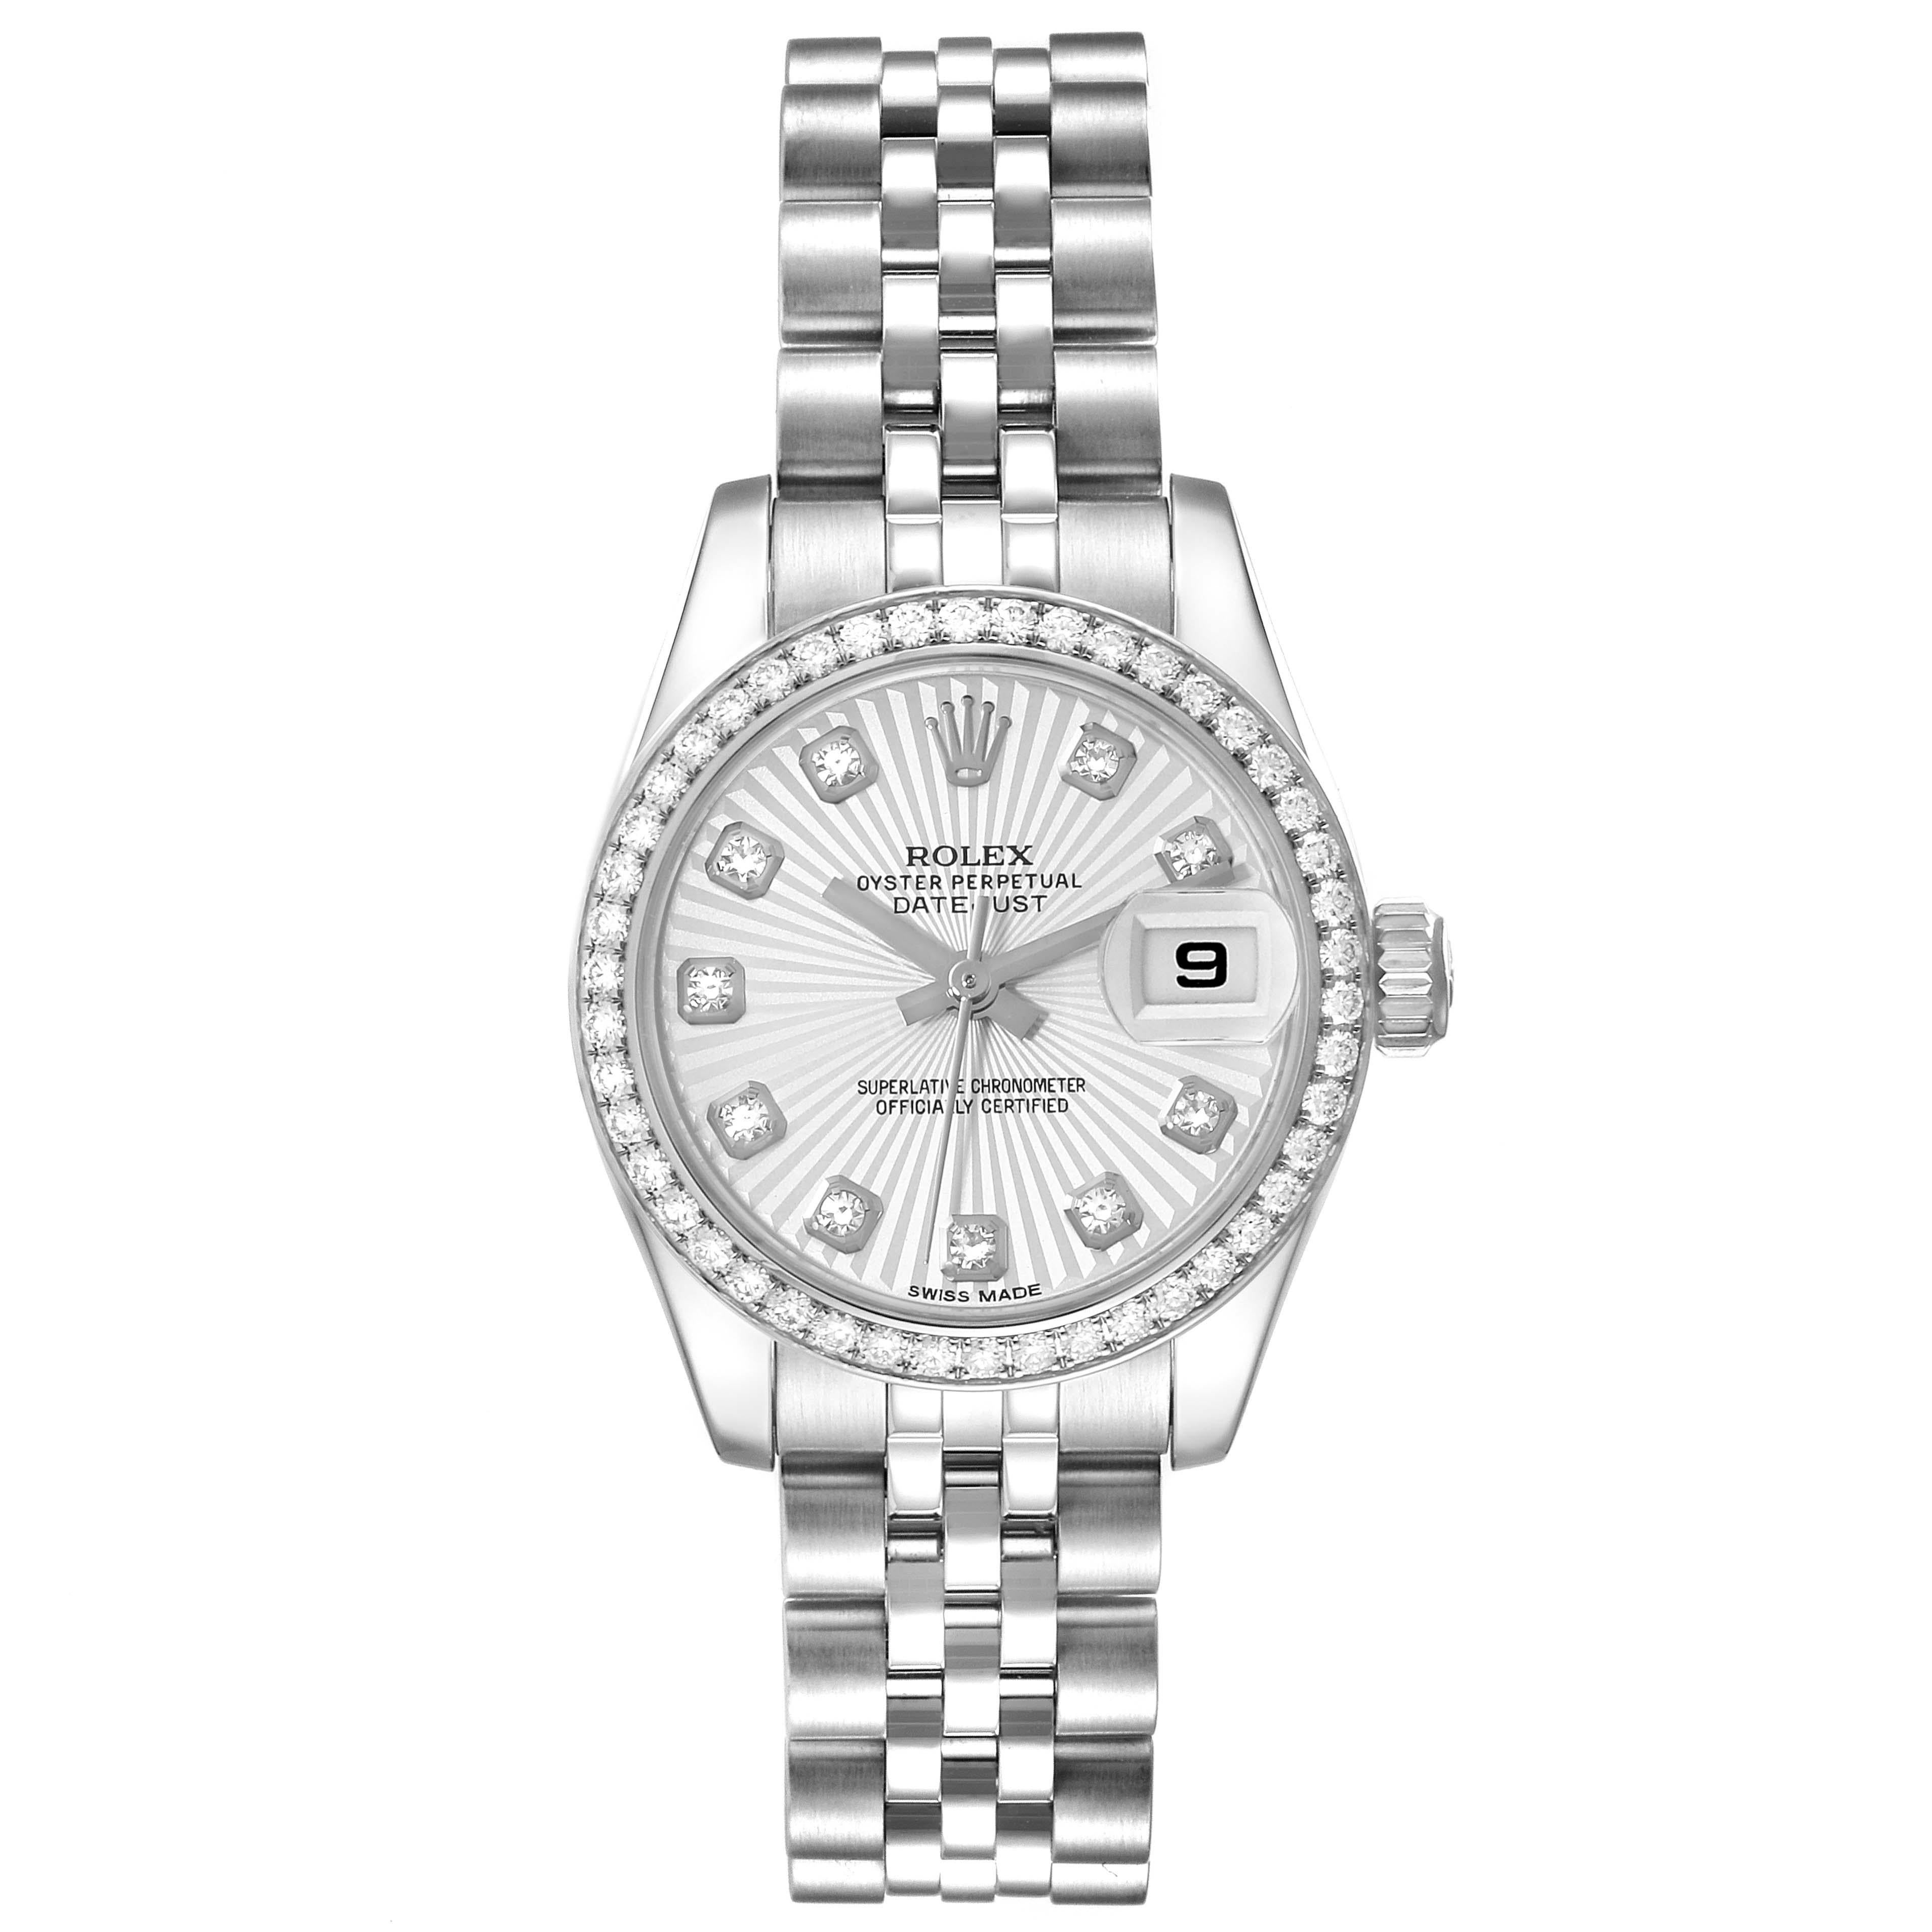 Rolex Datejust 26 Steel White Gold Sunburst Dial Diamond Ladies Watch 179384. Mouvement automatique à remontage automatique, officiellement certifié chronomètre. Boîtier oyster en acier inoxydable de 26.0 mm de diamètre. Logo Rolex sur une couronne.